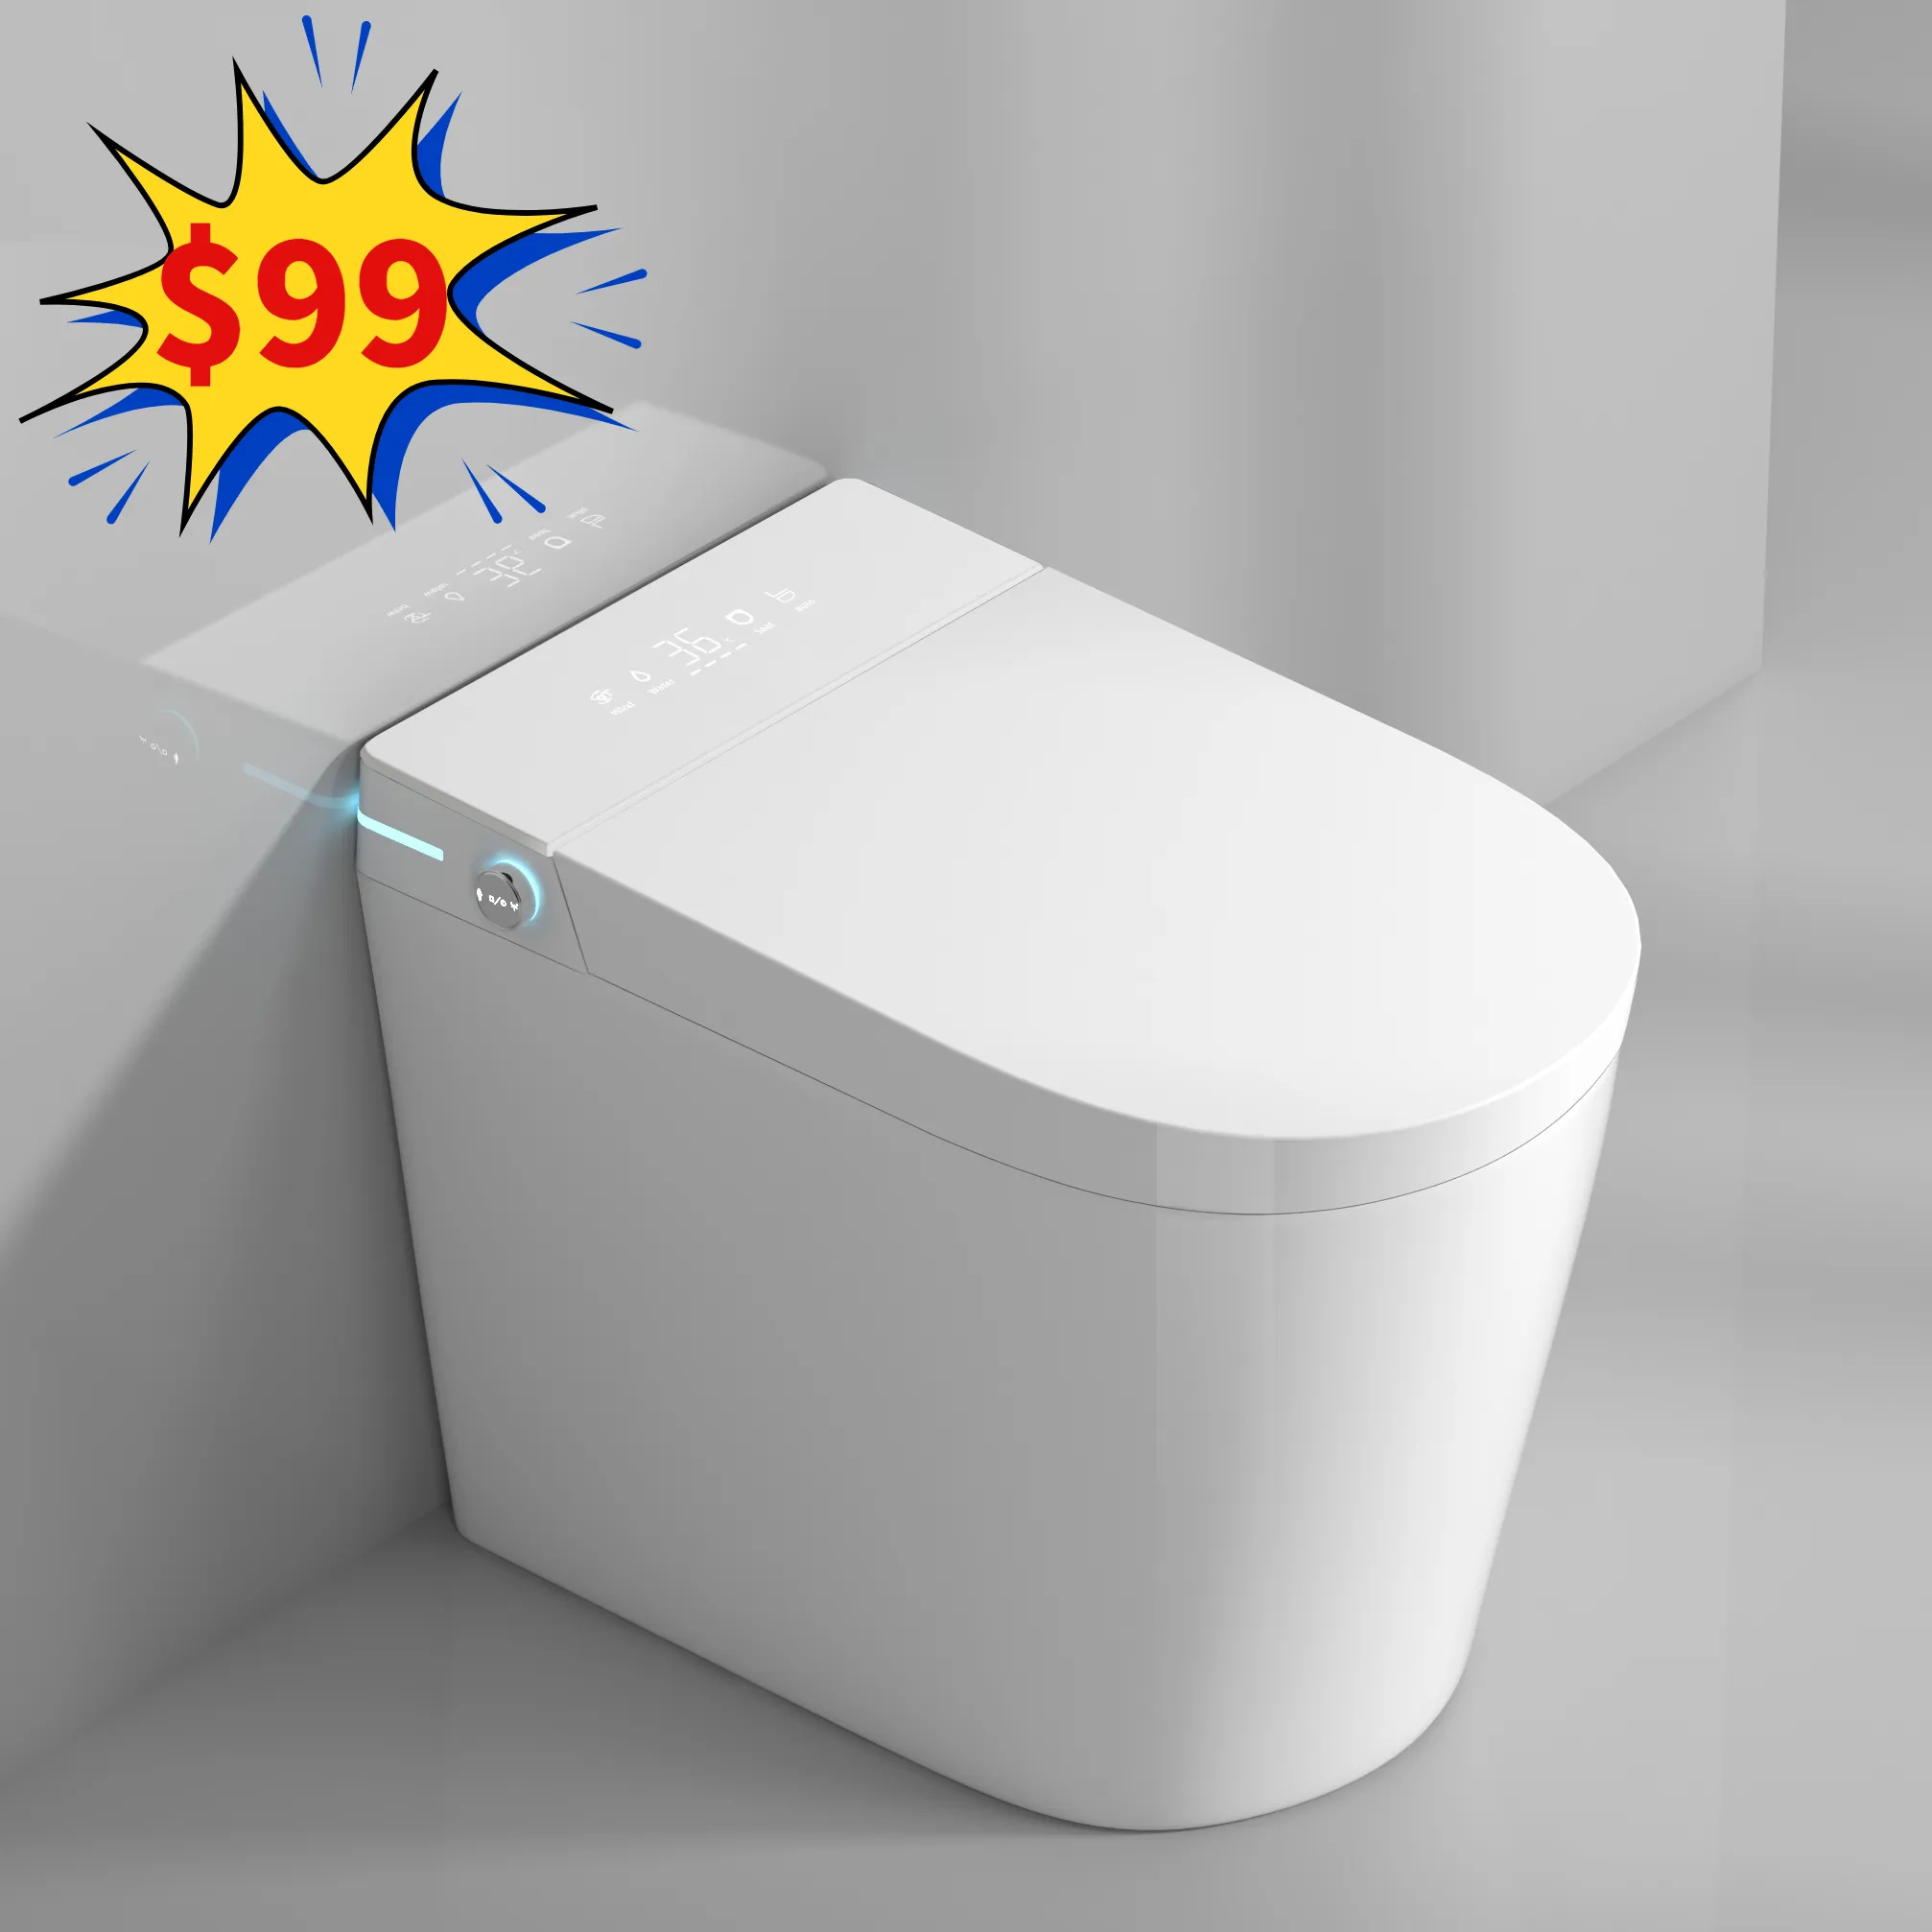 Venda superior vaso sanitário inteligente economizador de espaço, vaso sanitário de tamanho pequeno, vaso sanitário automático de cerâmica para banheiro, vaso sanitário inteligente